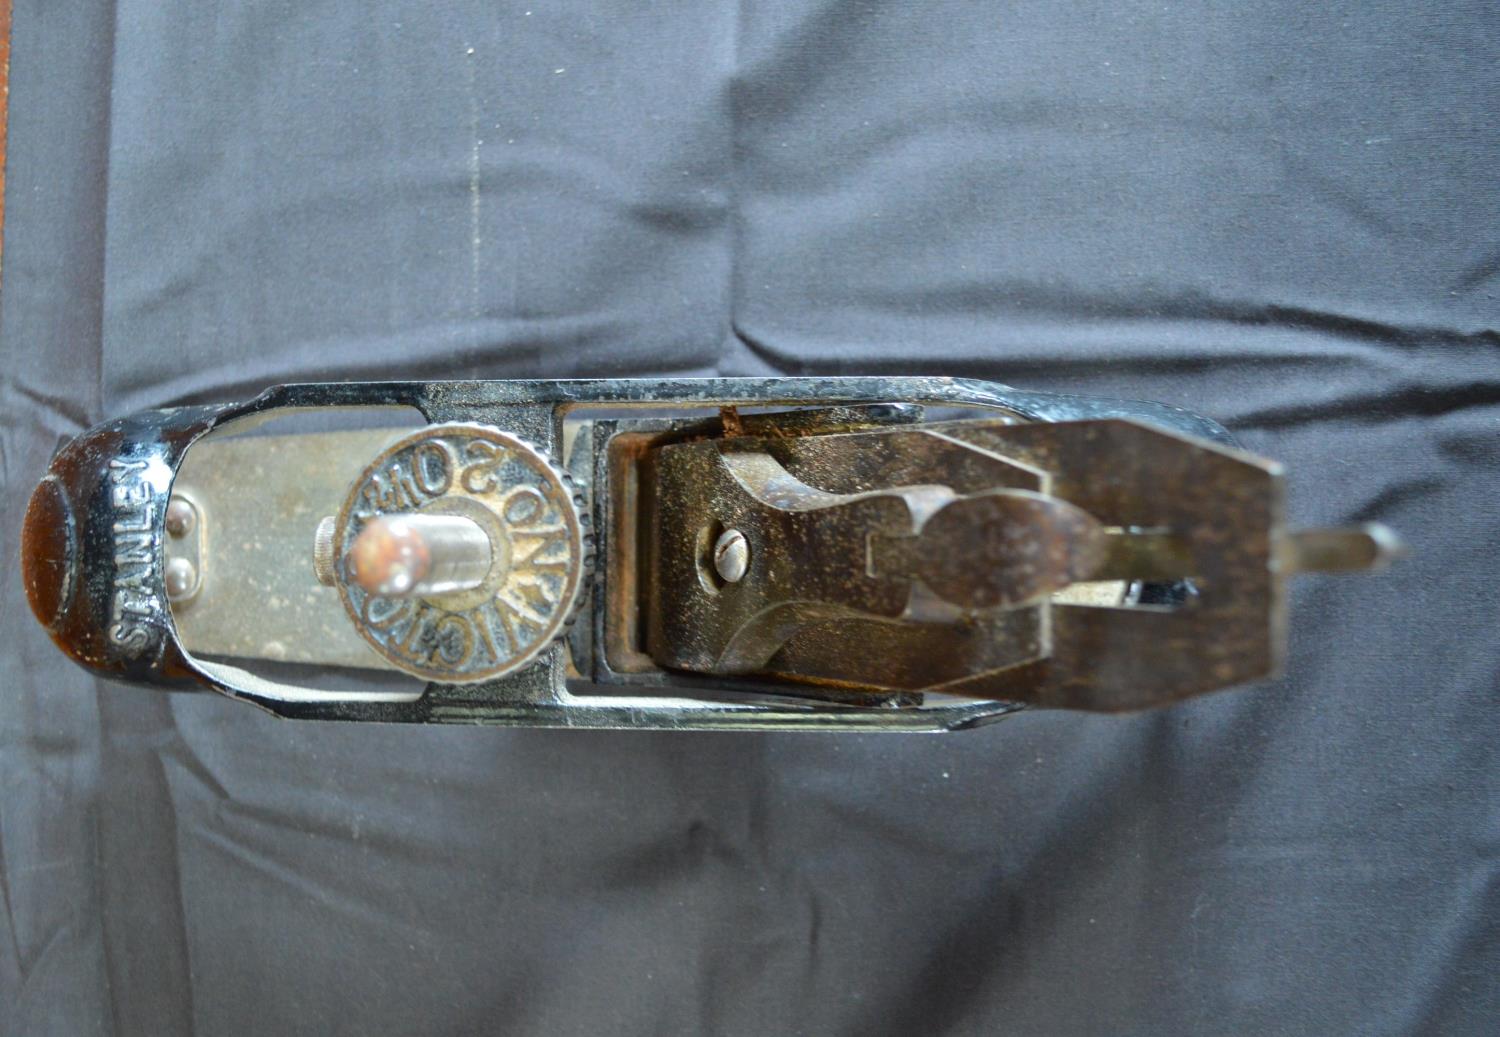 Stanley Victor No. 20.5 compass plane - 25cm long x 5.5cm wide Please note descriptions are not - Bild 2 aus 4